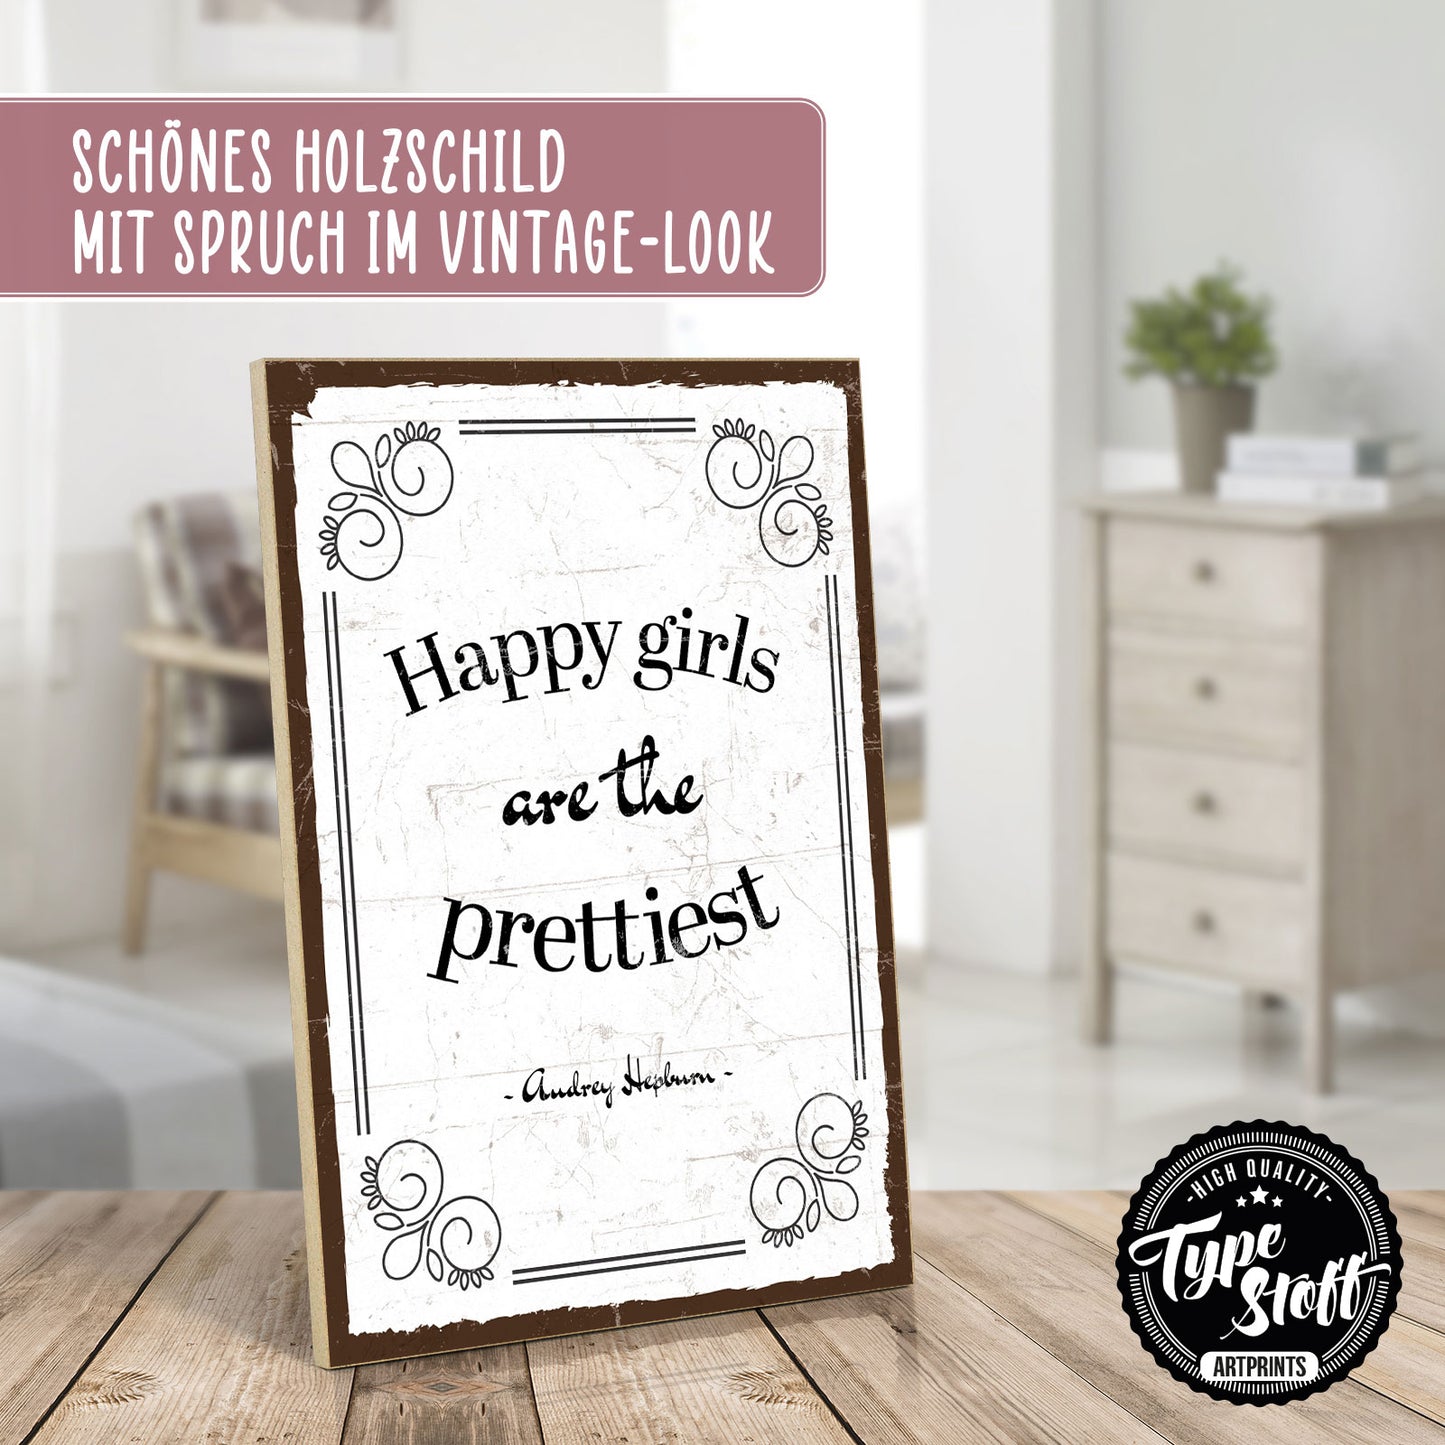 Holzschild mit Spruch - Happy girls are the prettiest – HS-GH-01057